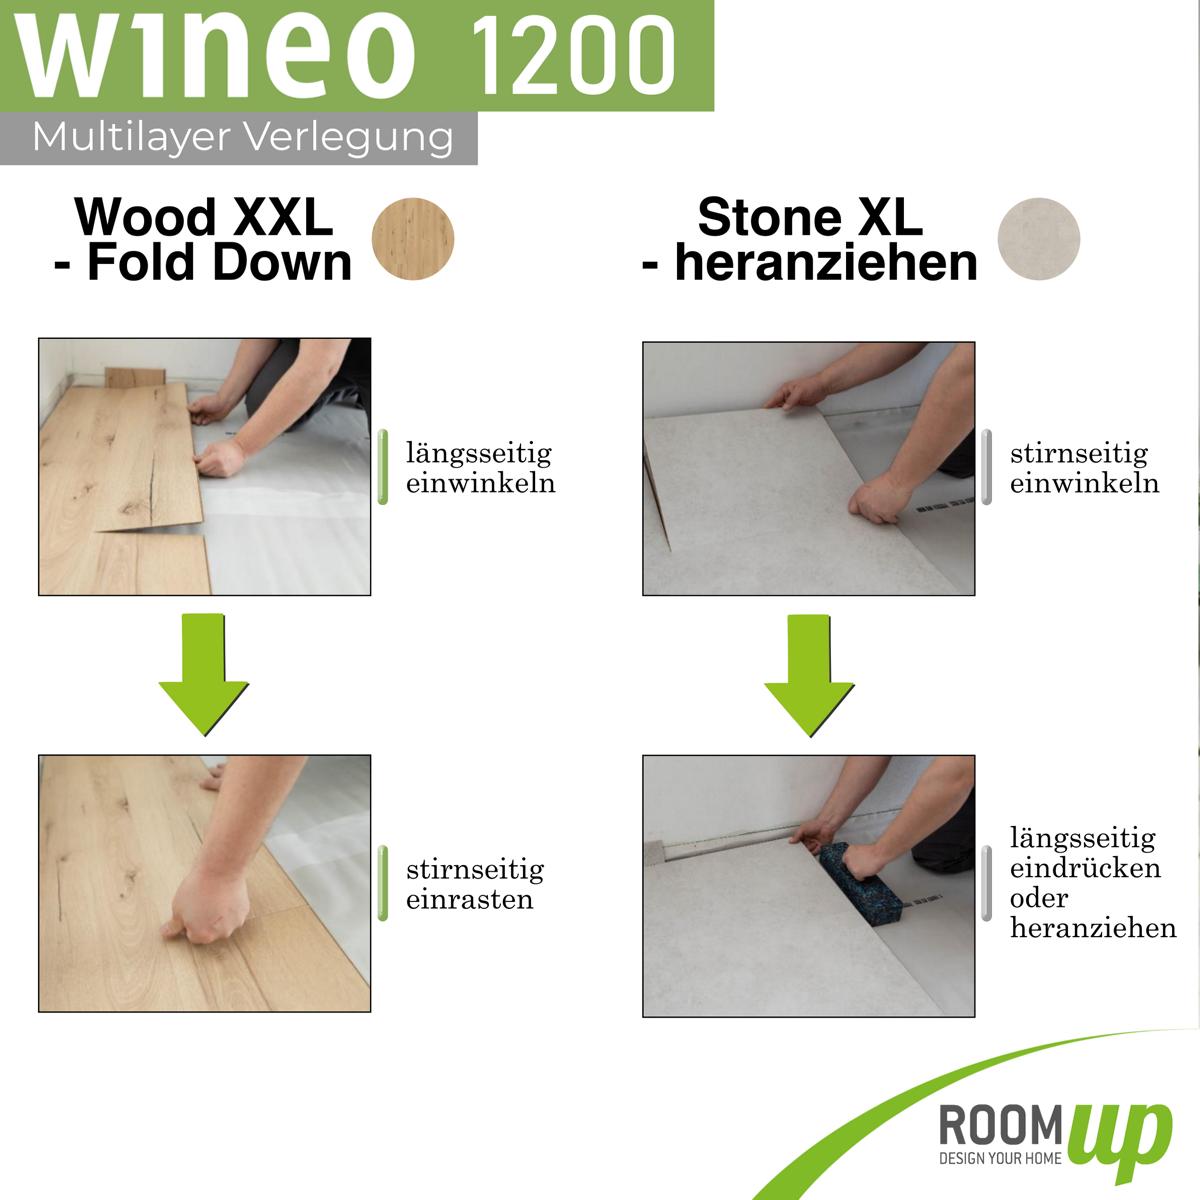 Wineo 1200 XXL verlegen - Fold-Down und LocTec Verbindung